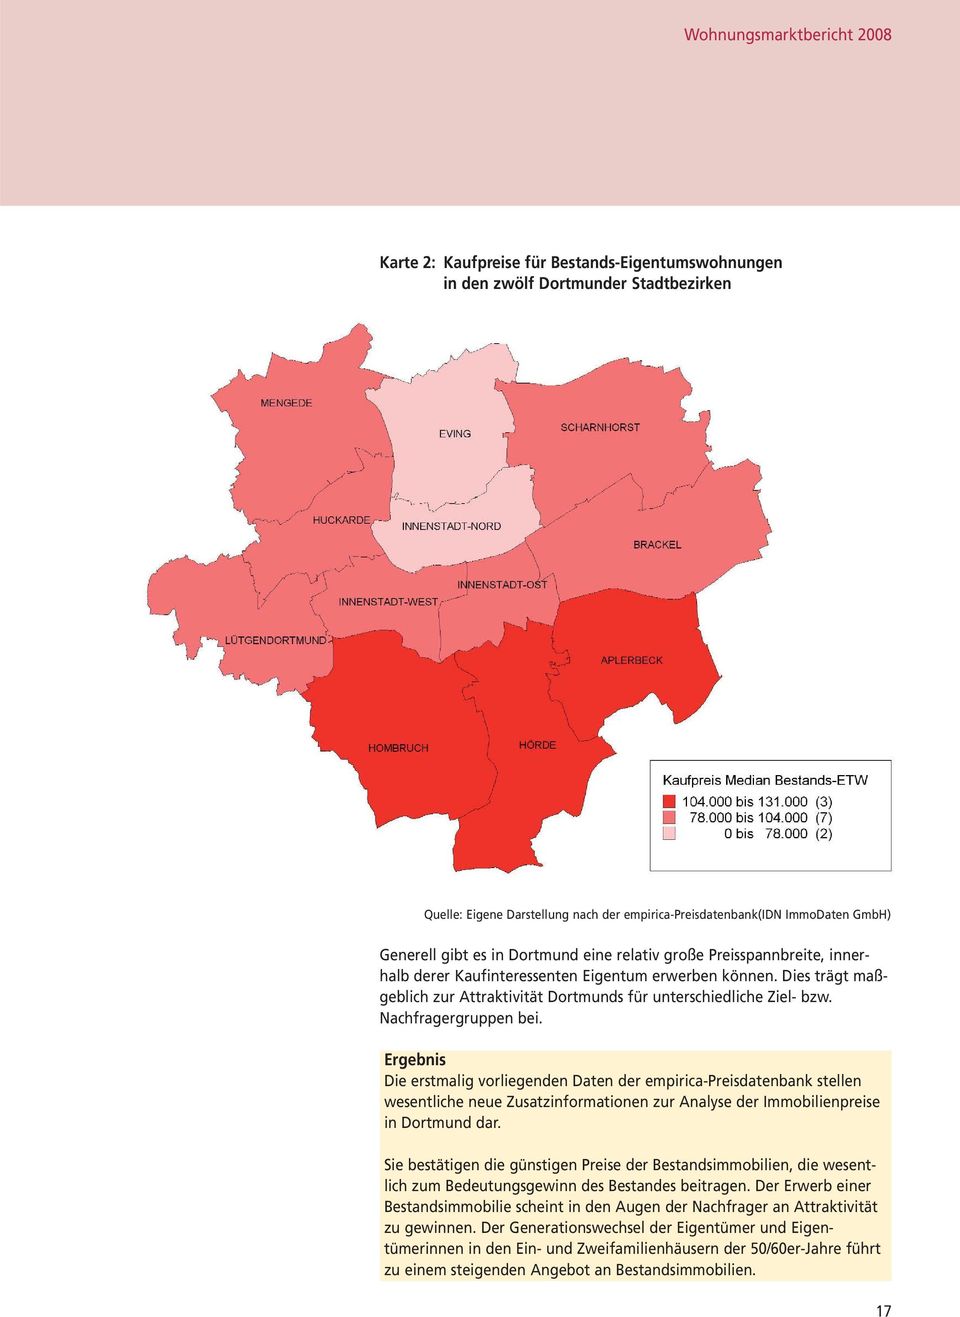 Nachfragergruppen bei. Ergebnis Die erstmalig vorliegenden Daten der empirica-preisdatenbank stellen wesentliche neue Zusatzinformationen zur Analyse der Immobilienpreise in Dortmund dar.